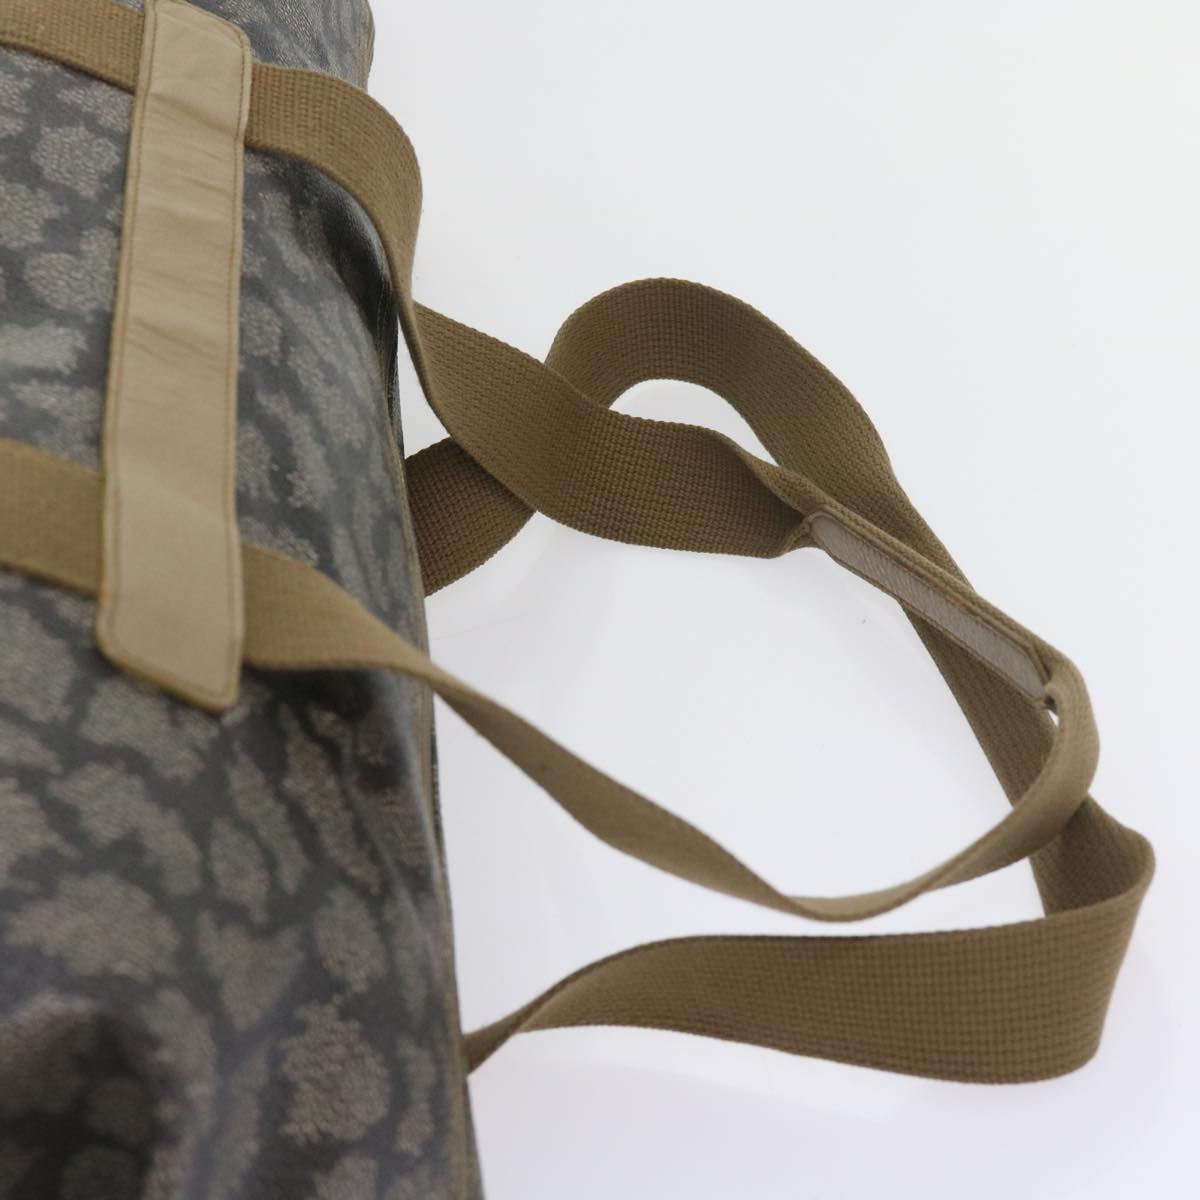 SAINT LAURENT Shoulder Bag PVC Leather Gray Auth bs8707